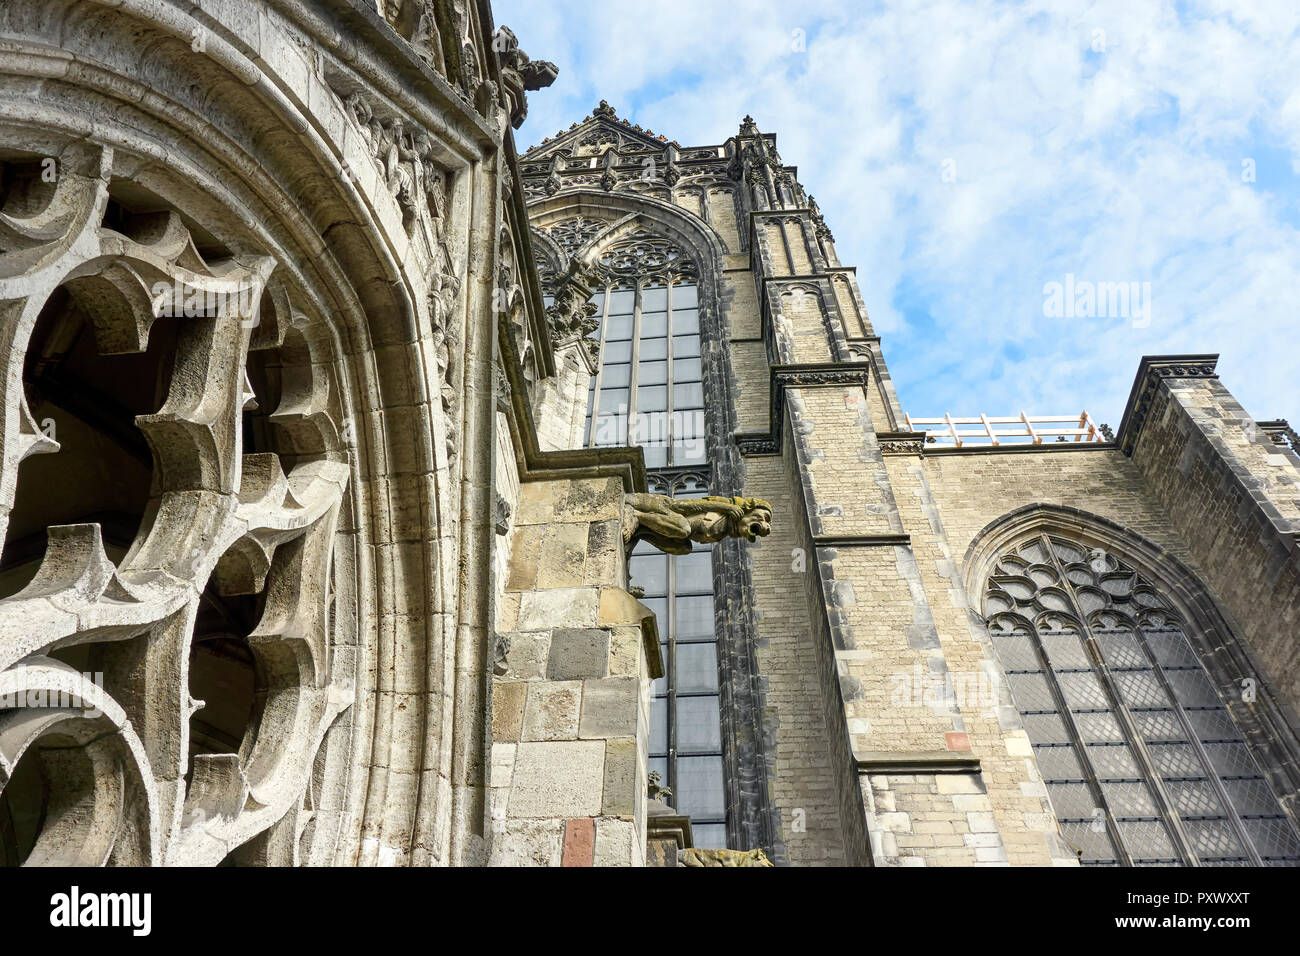 Dettaglio del Dom o la chiesa di San Martino nella cattedrale di Utrecht. Il solo pre-riforma cattedrale gotica nei Paesi Bassi. Foto Stock